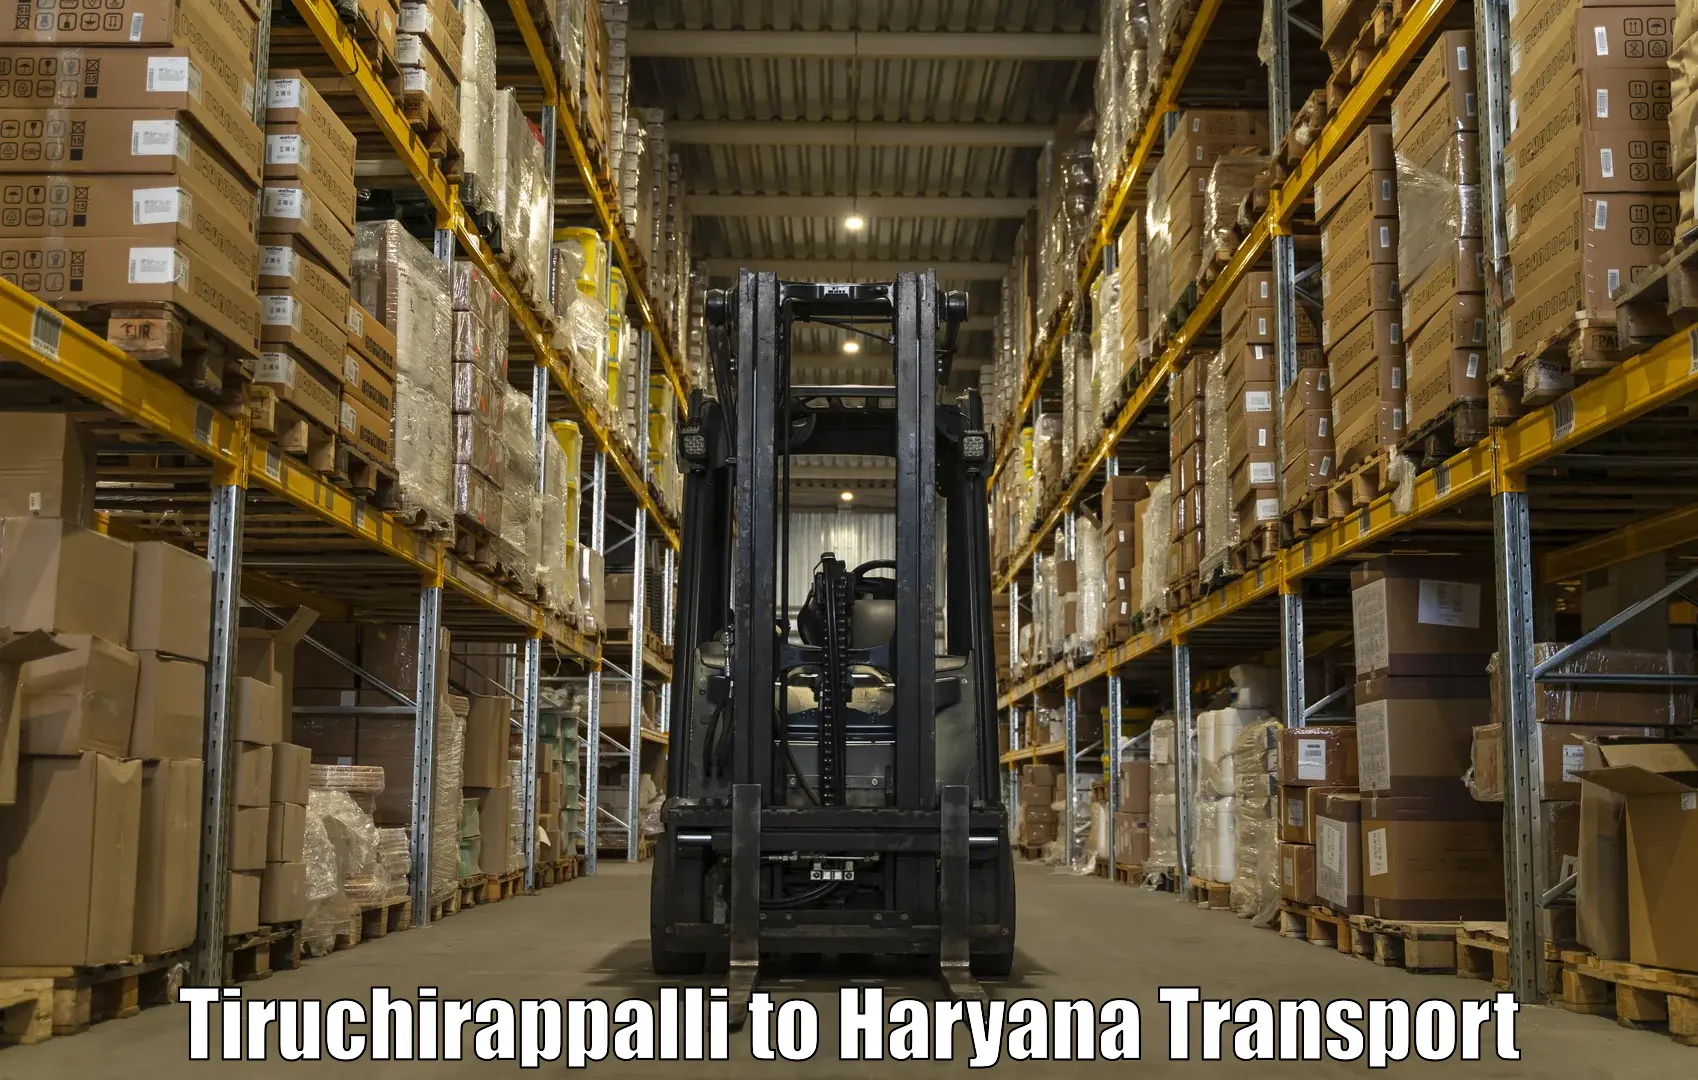 Nationwide transport services Tiruchirappalli to IIIT Sonepat